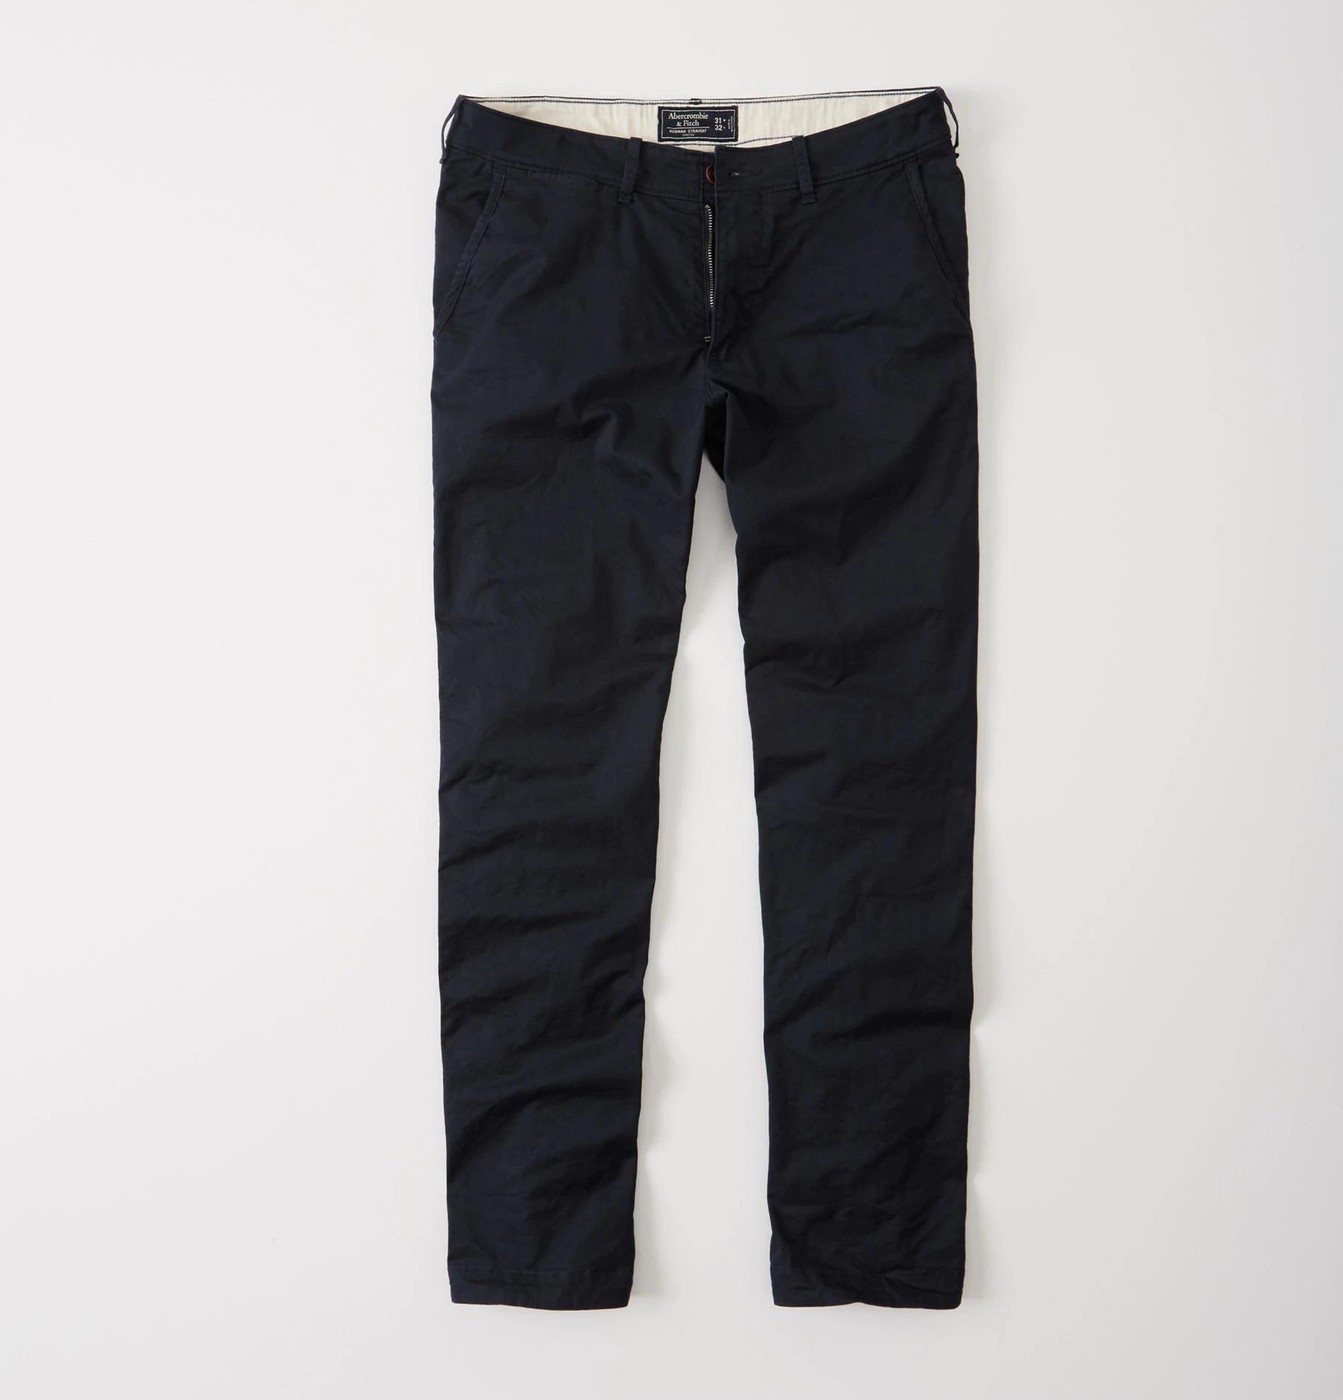 Брюки мужские - брюки Kennan Straight Abercrombie & Fitch, 32/34, 32/34